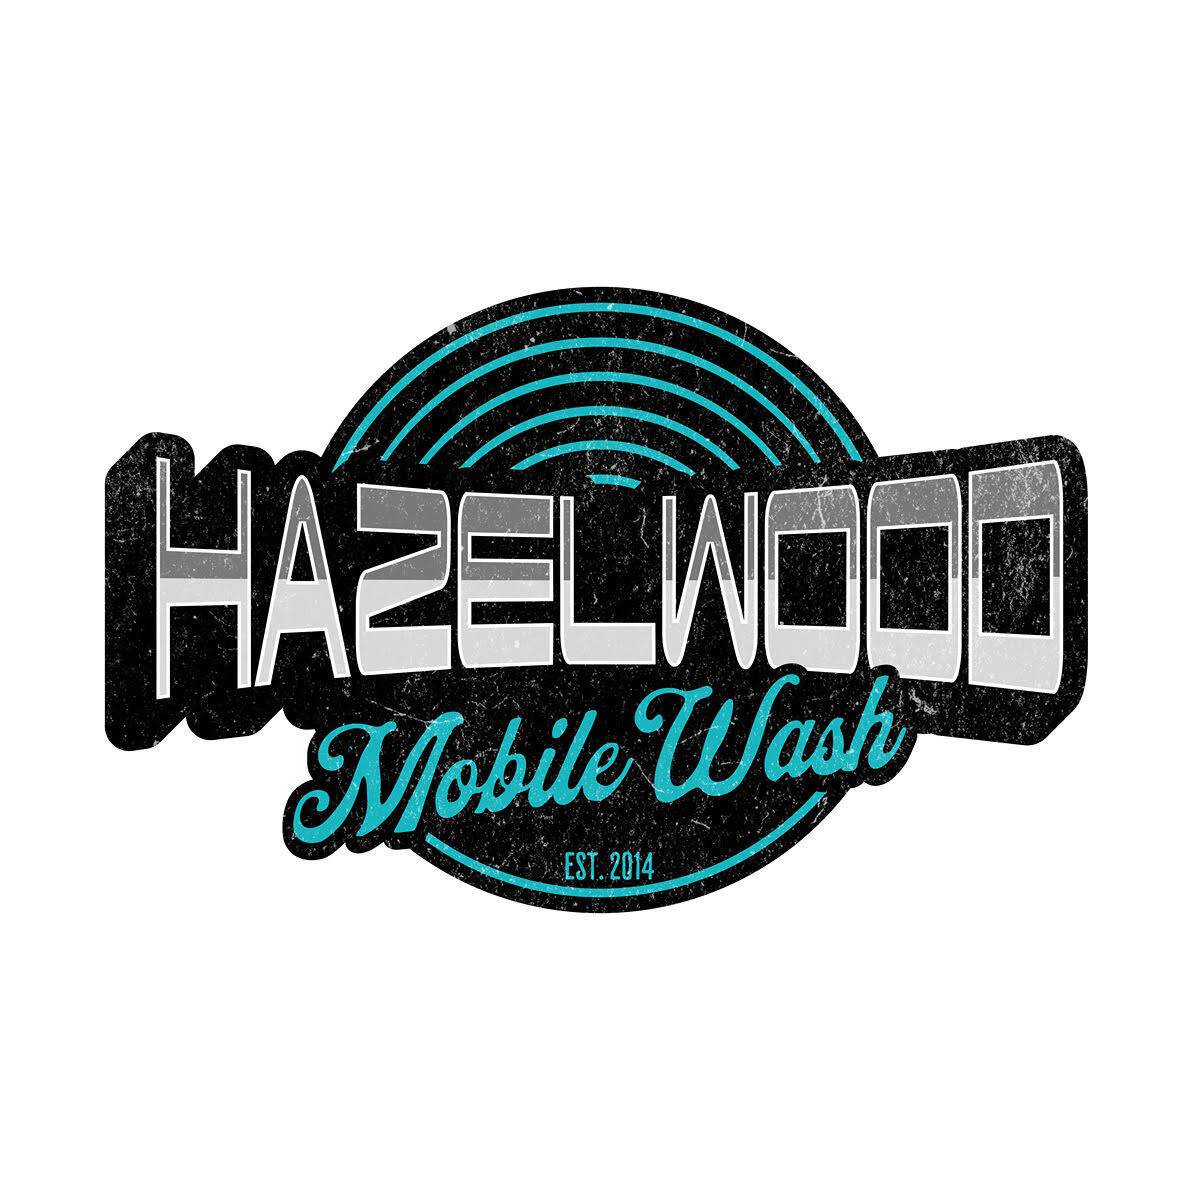 Hazelwood Mobile Wash